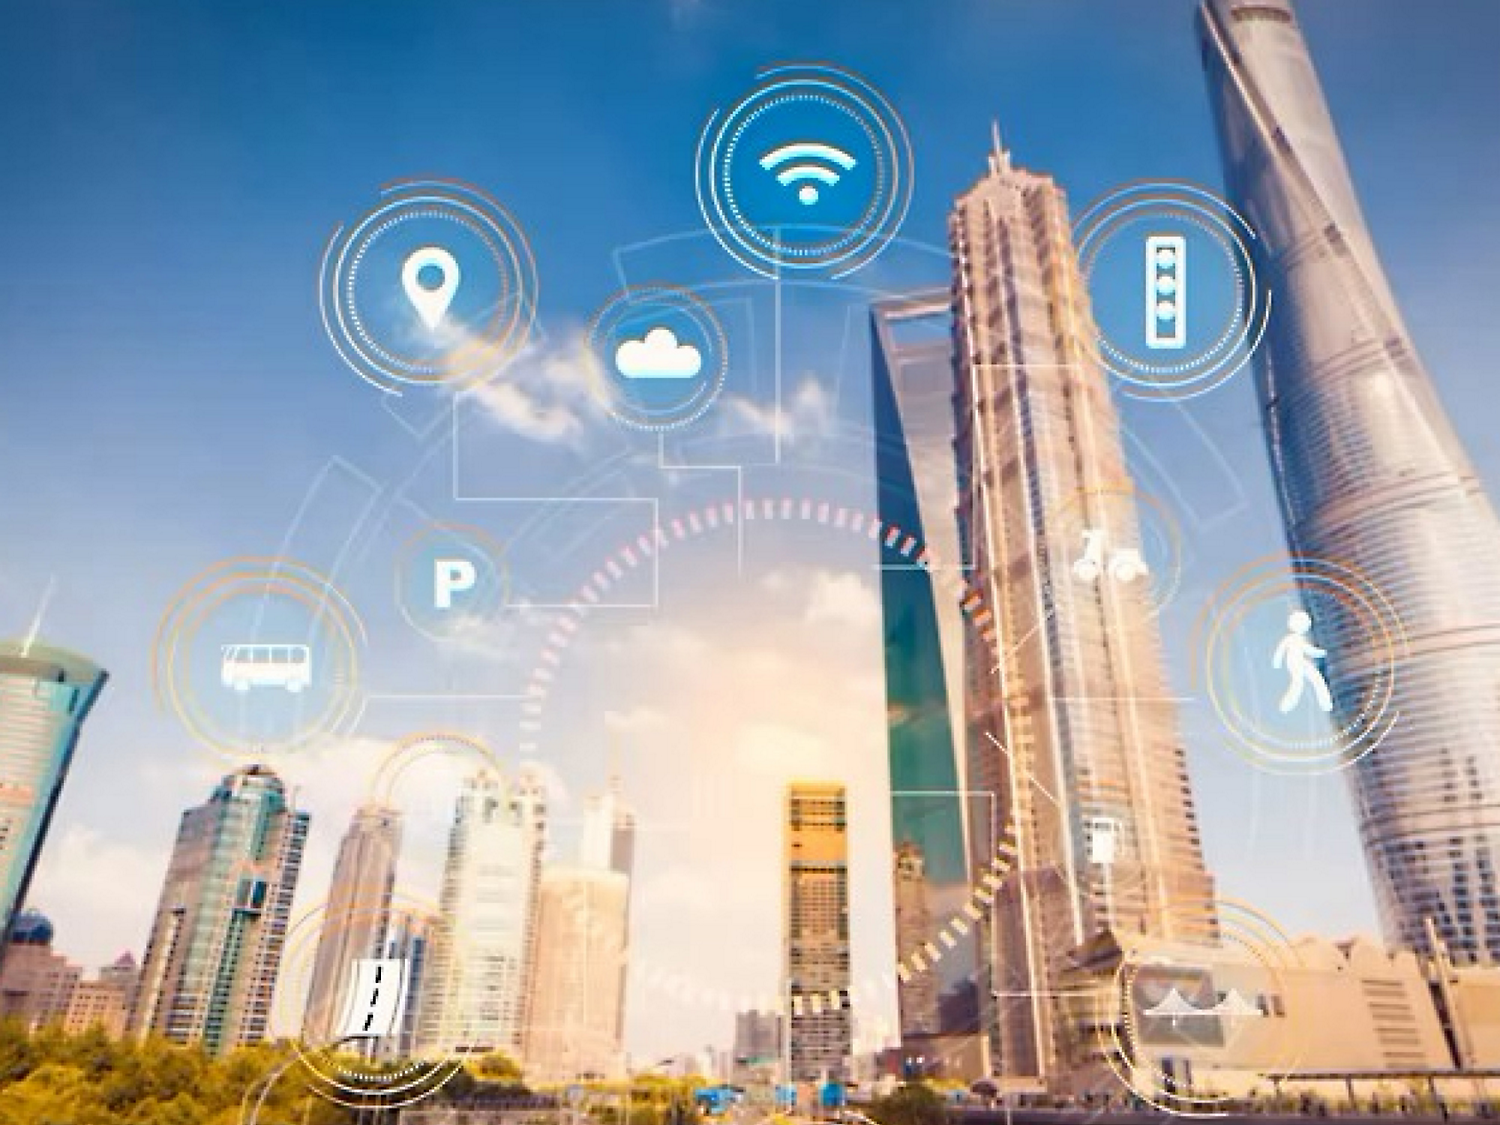 Wi-Fi、クラウド コンピューティング、その他のテクノロジを表すデジタル アイコンを備えた、高層ビルが立ち並んだスマート シティの図。